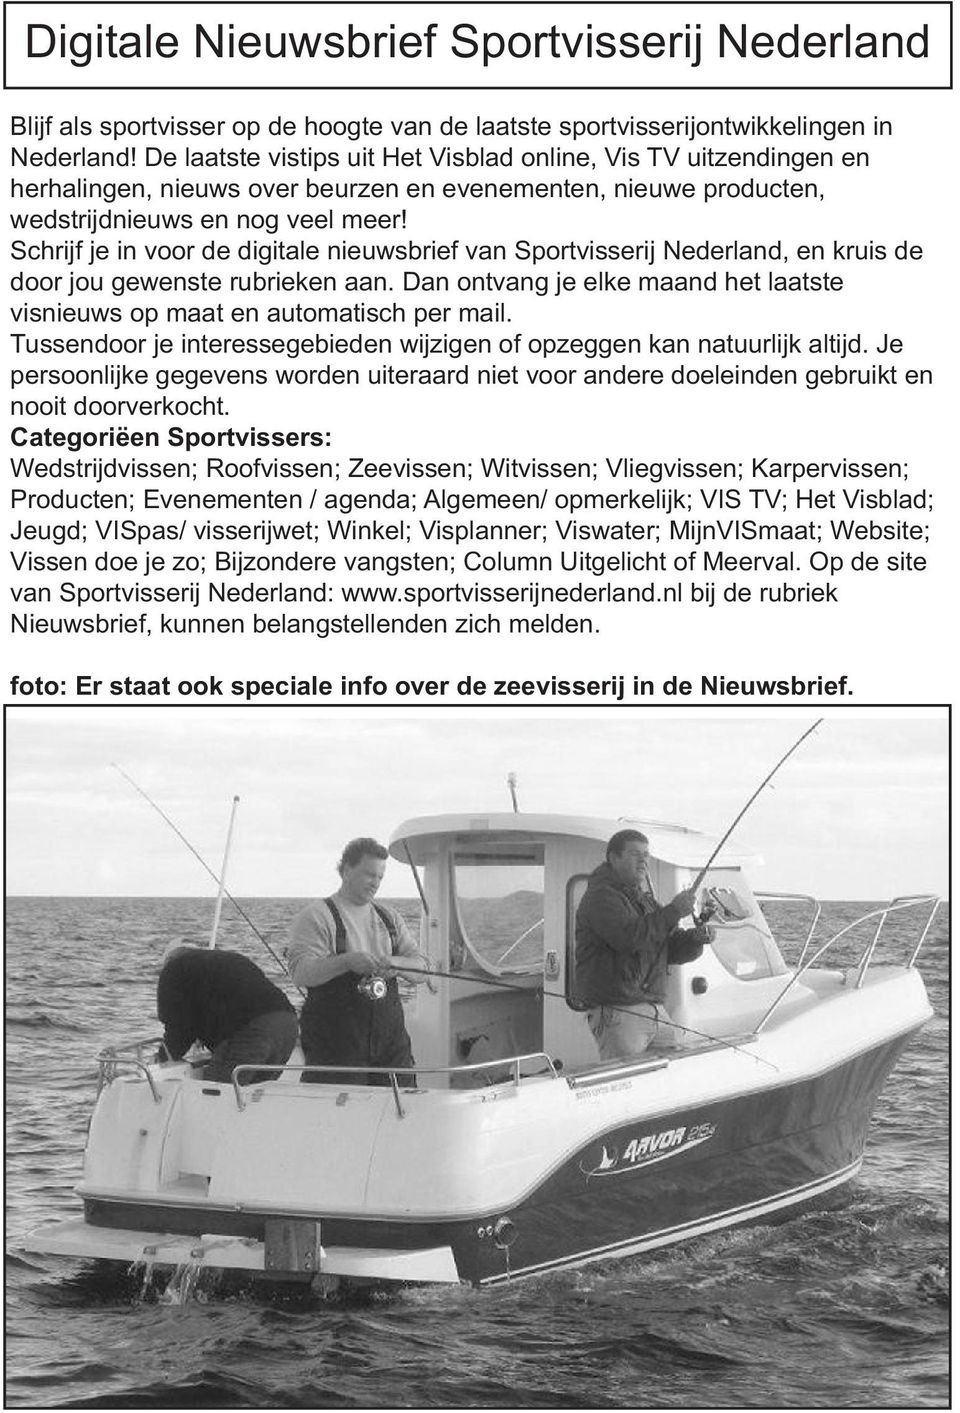 Schrijf je in voor de digitale nieuwsbrief van Sportvisserij Nederland, en kruis de door jou gewenste rubrieken aan. Dan ontvang je elke maand het laatste visnieuws op maat en automatisch per mail.